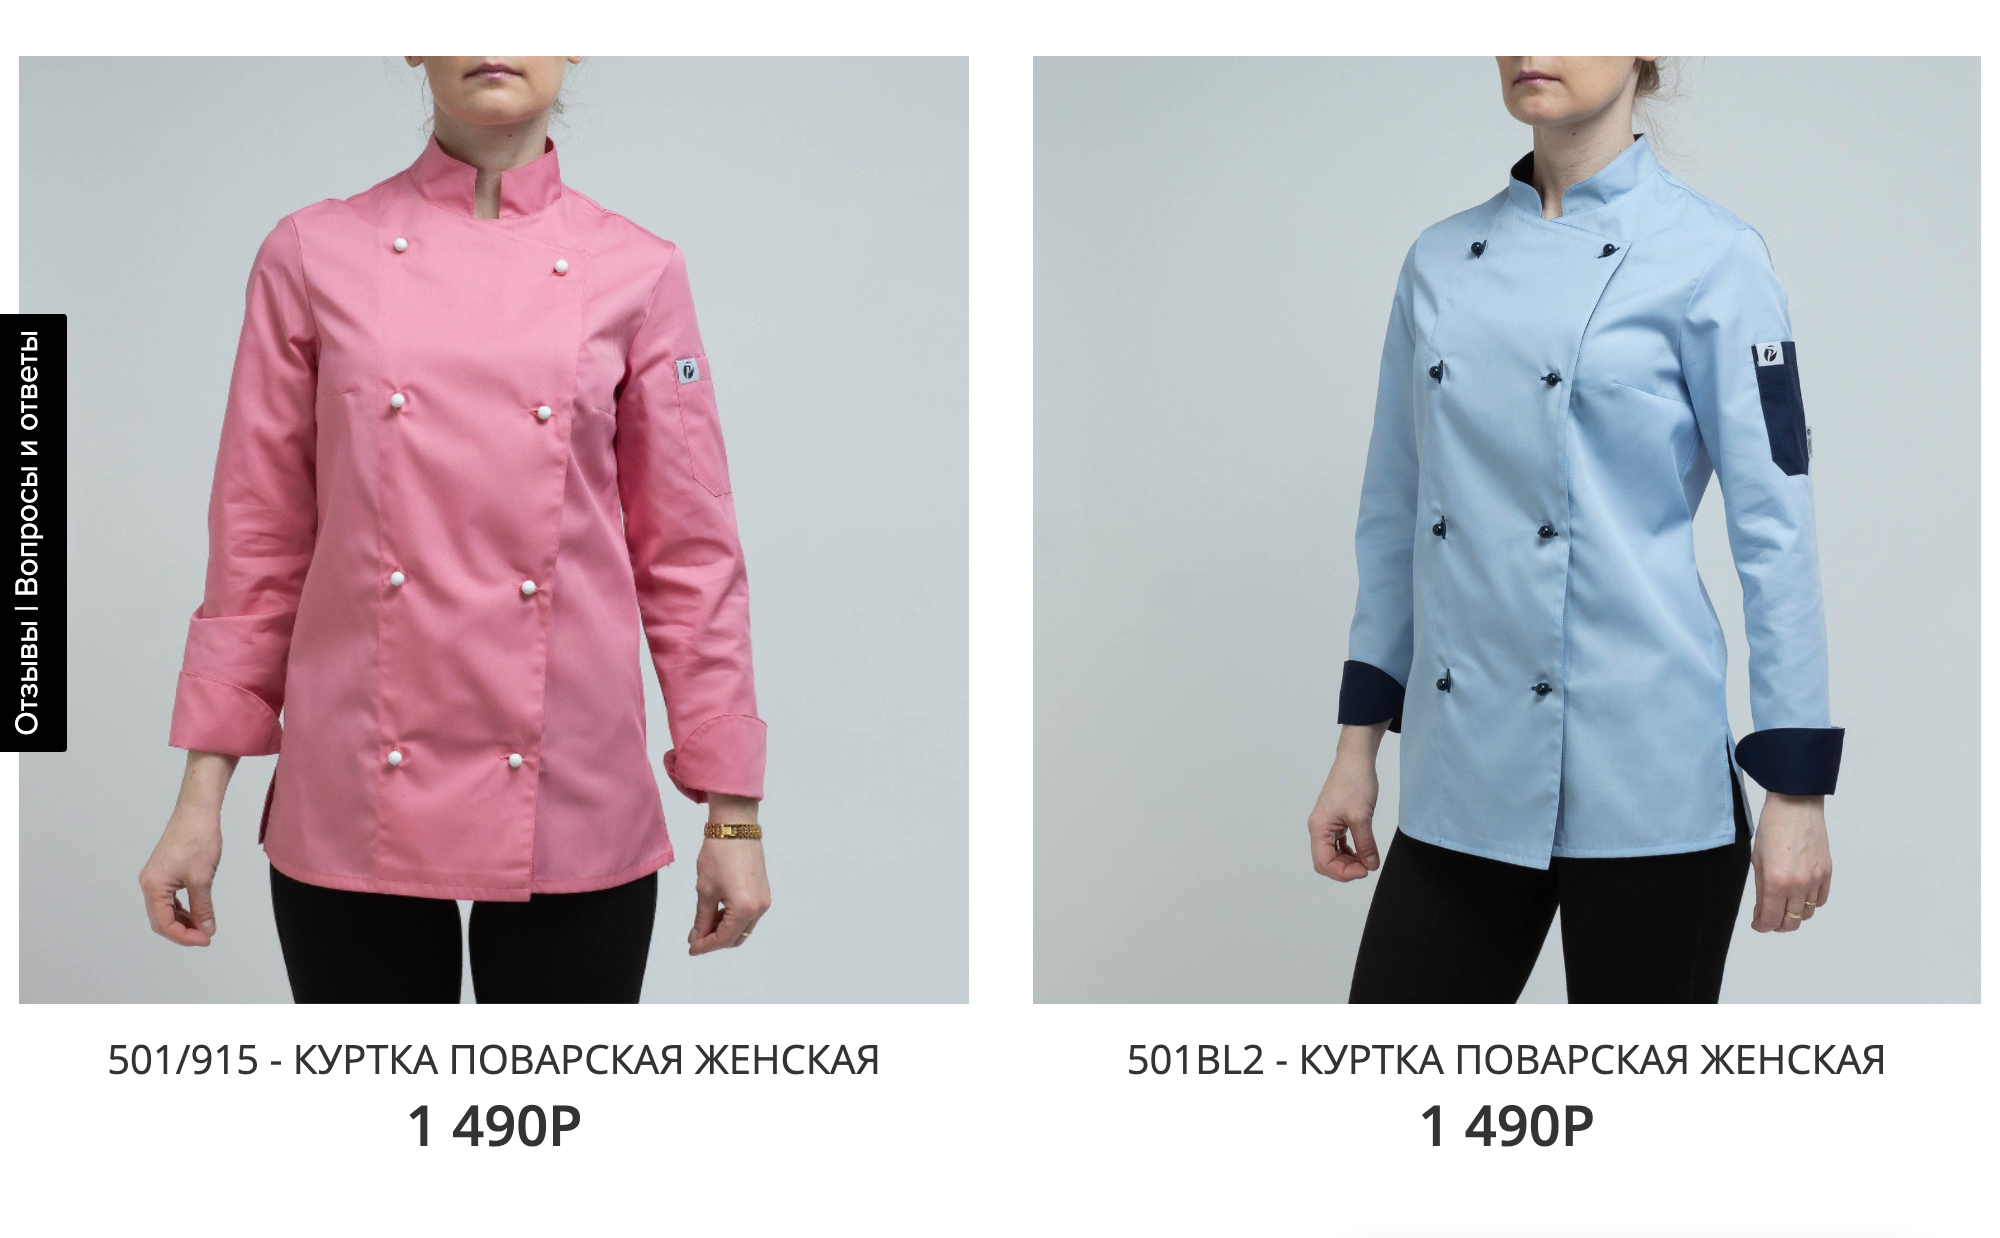 Женскую поварскую куртку можно купить за 1600 ₽. Источник: «Питерпроф-ком»